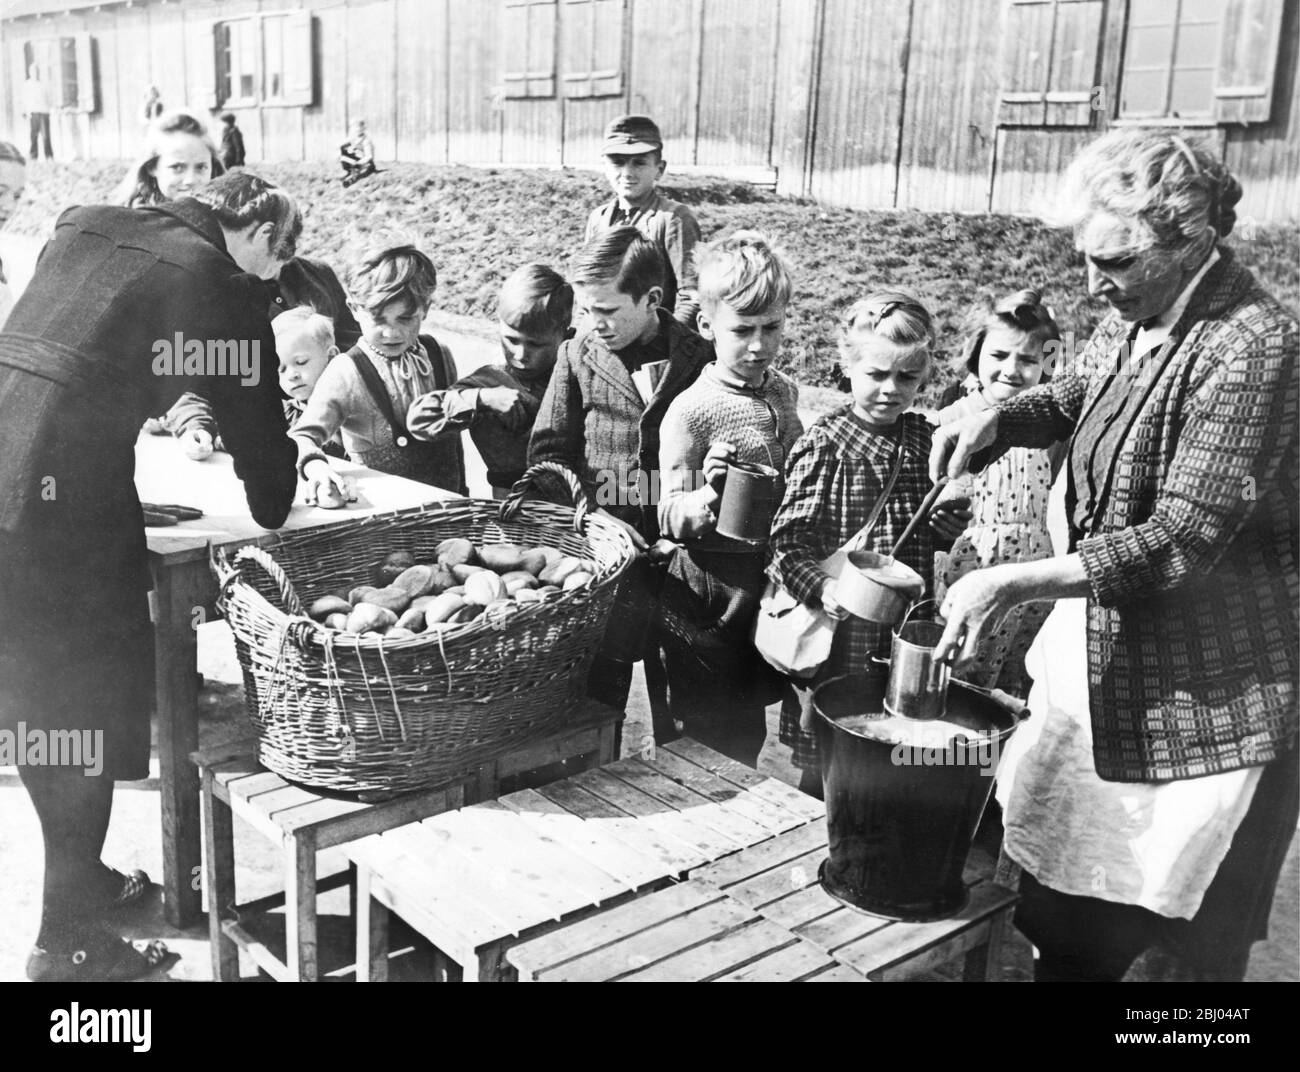 Allemagne d'après-guerre. Décembre 1948 - Hof, Allemagne. Ces enfants reçoivent de la soupe appétissante et des petits pains dans le cadre du programme d'alimentation scolaire parrainé par Hilfswerk, l'Agence protestante de secours. Ces jeunes appartiennent à des familles expulsées d'Europe de l'est parce qu'elles sont allemandes. Banque D'Images